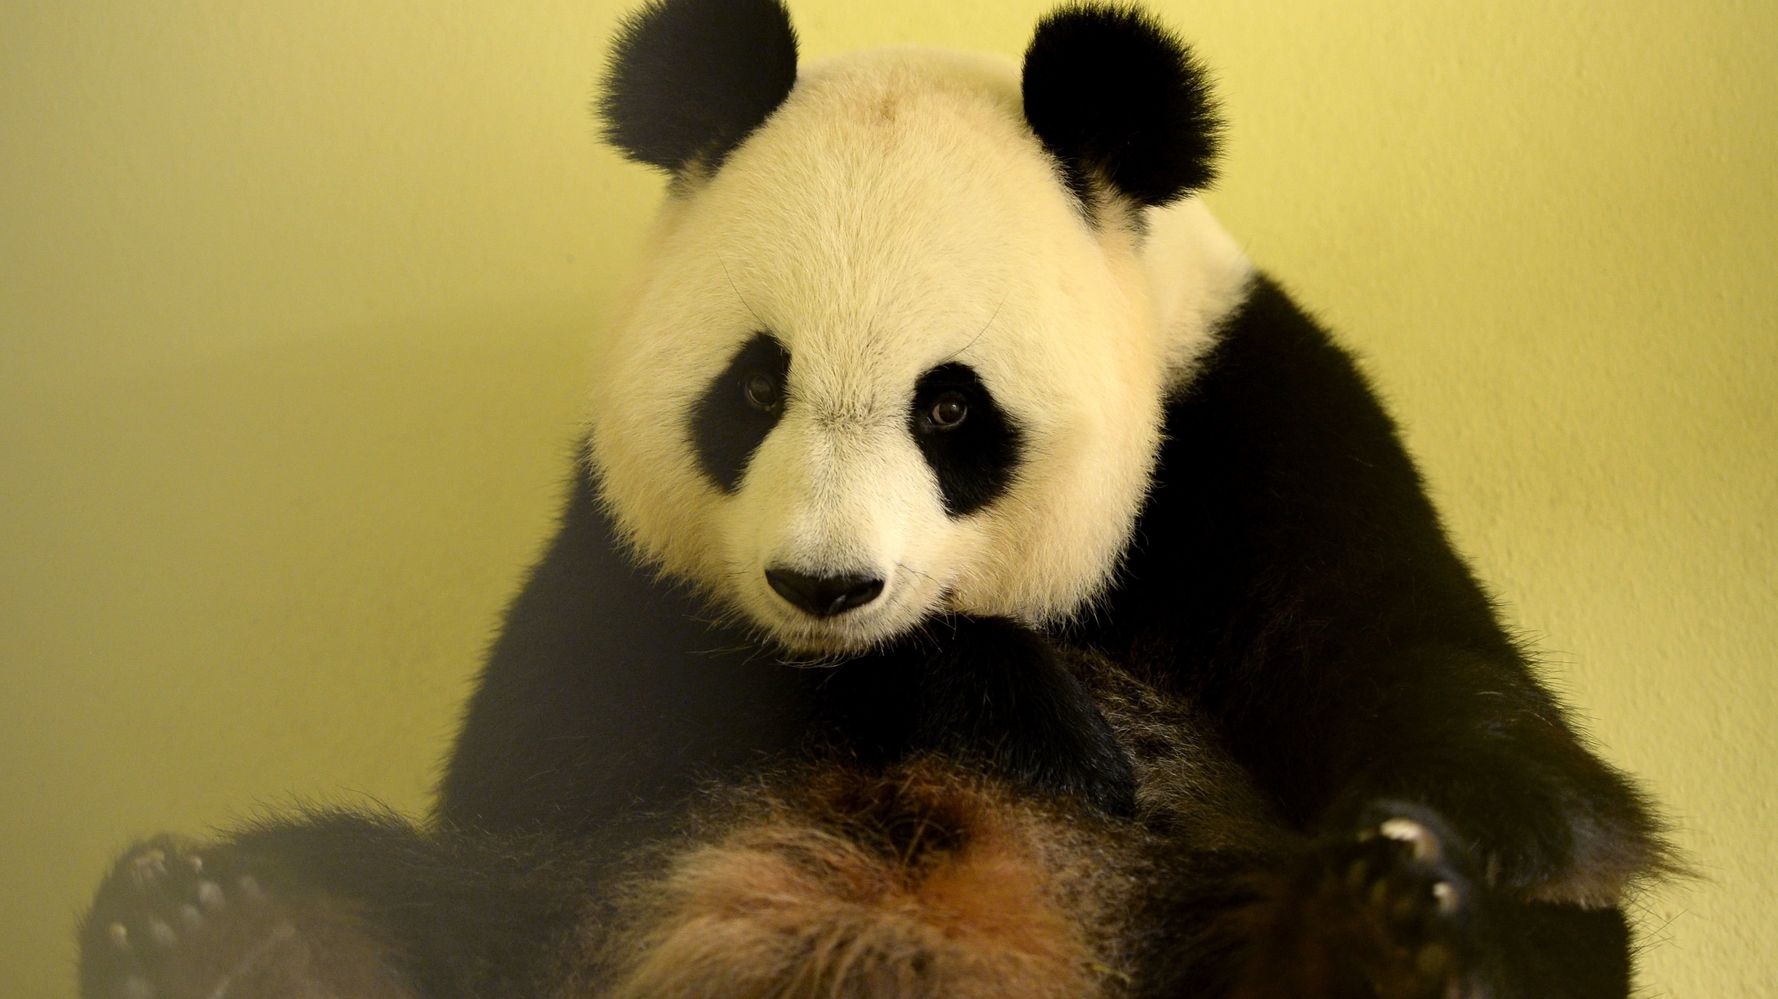 Zoo De Beauval Pourquoi Se Rejouit On De La Naissance De Pandas En Captivite Alors Qu On Y Interdit La Reproduction Des Dauphins Le Huffington Post Life